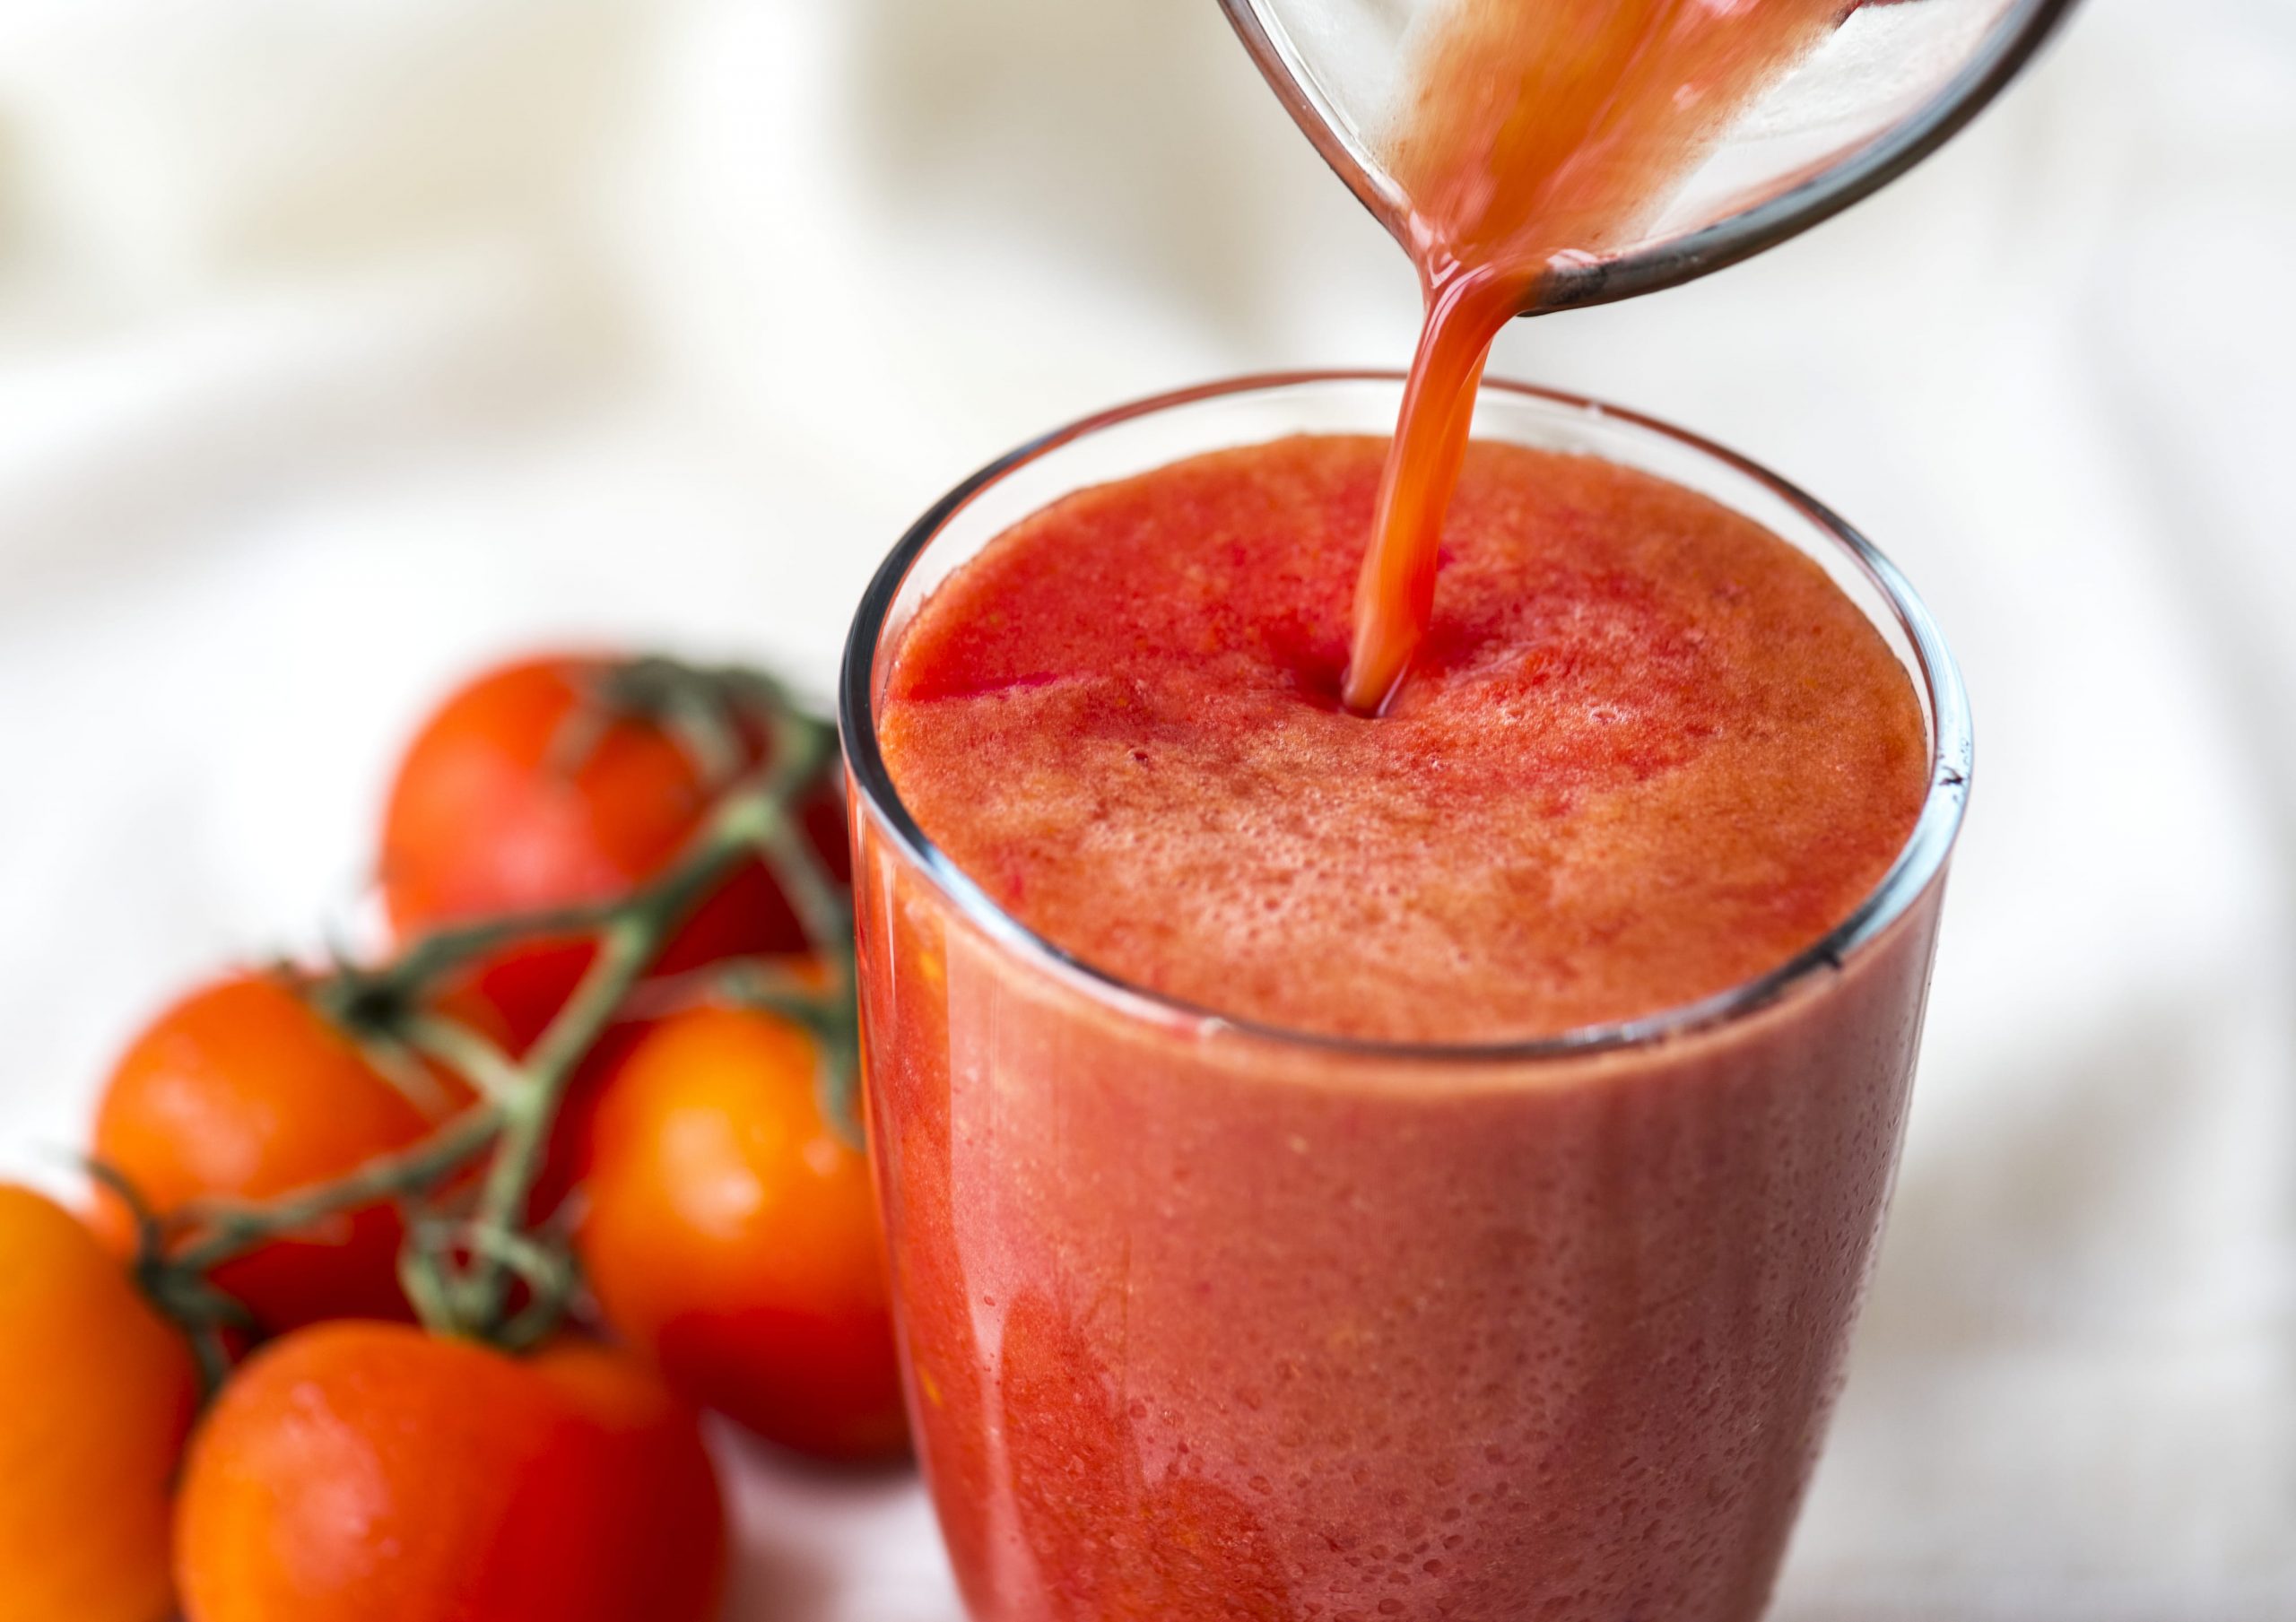 Сколько томатного сока нужно пить женщинам, чтобы облегчить менопаузу?